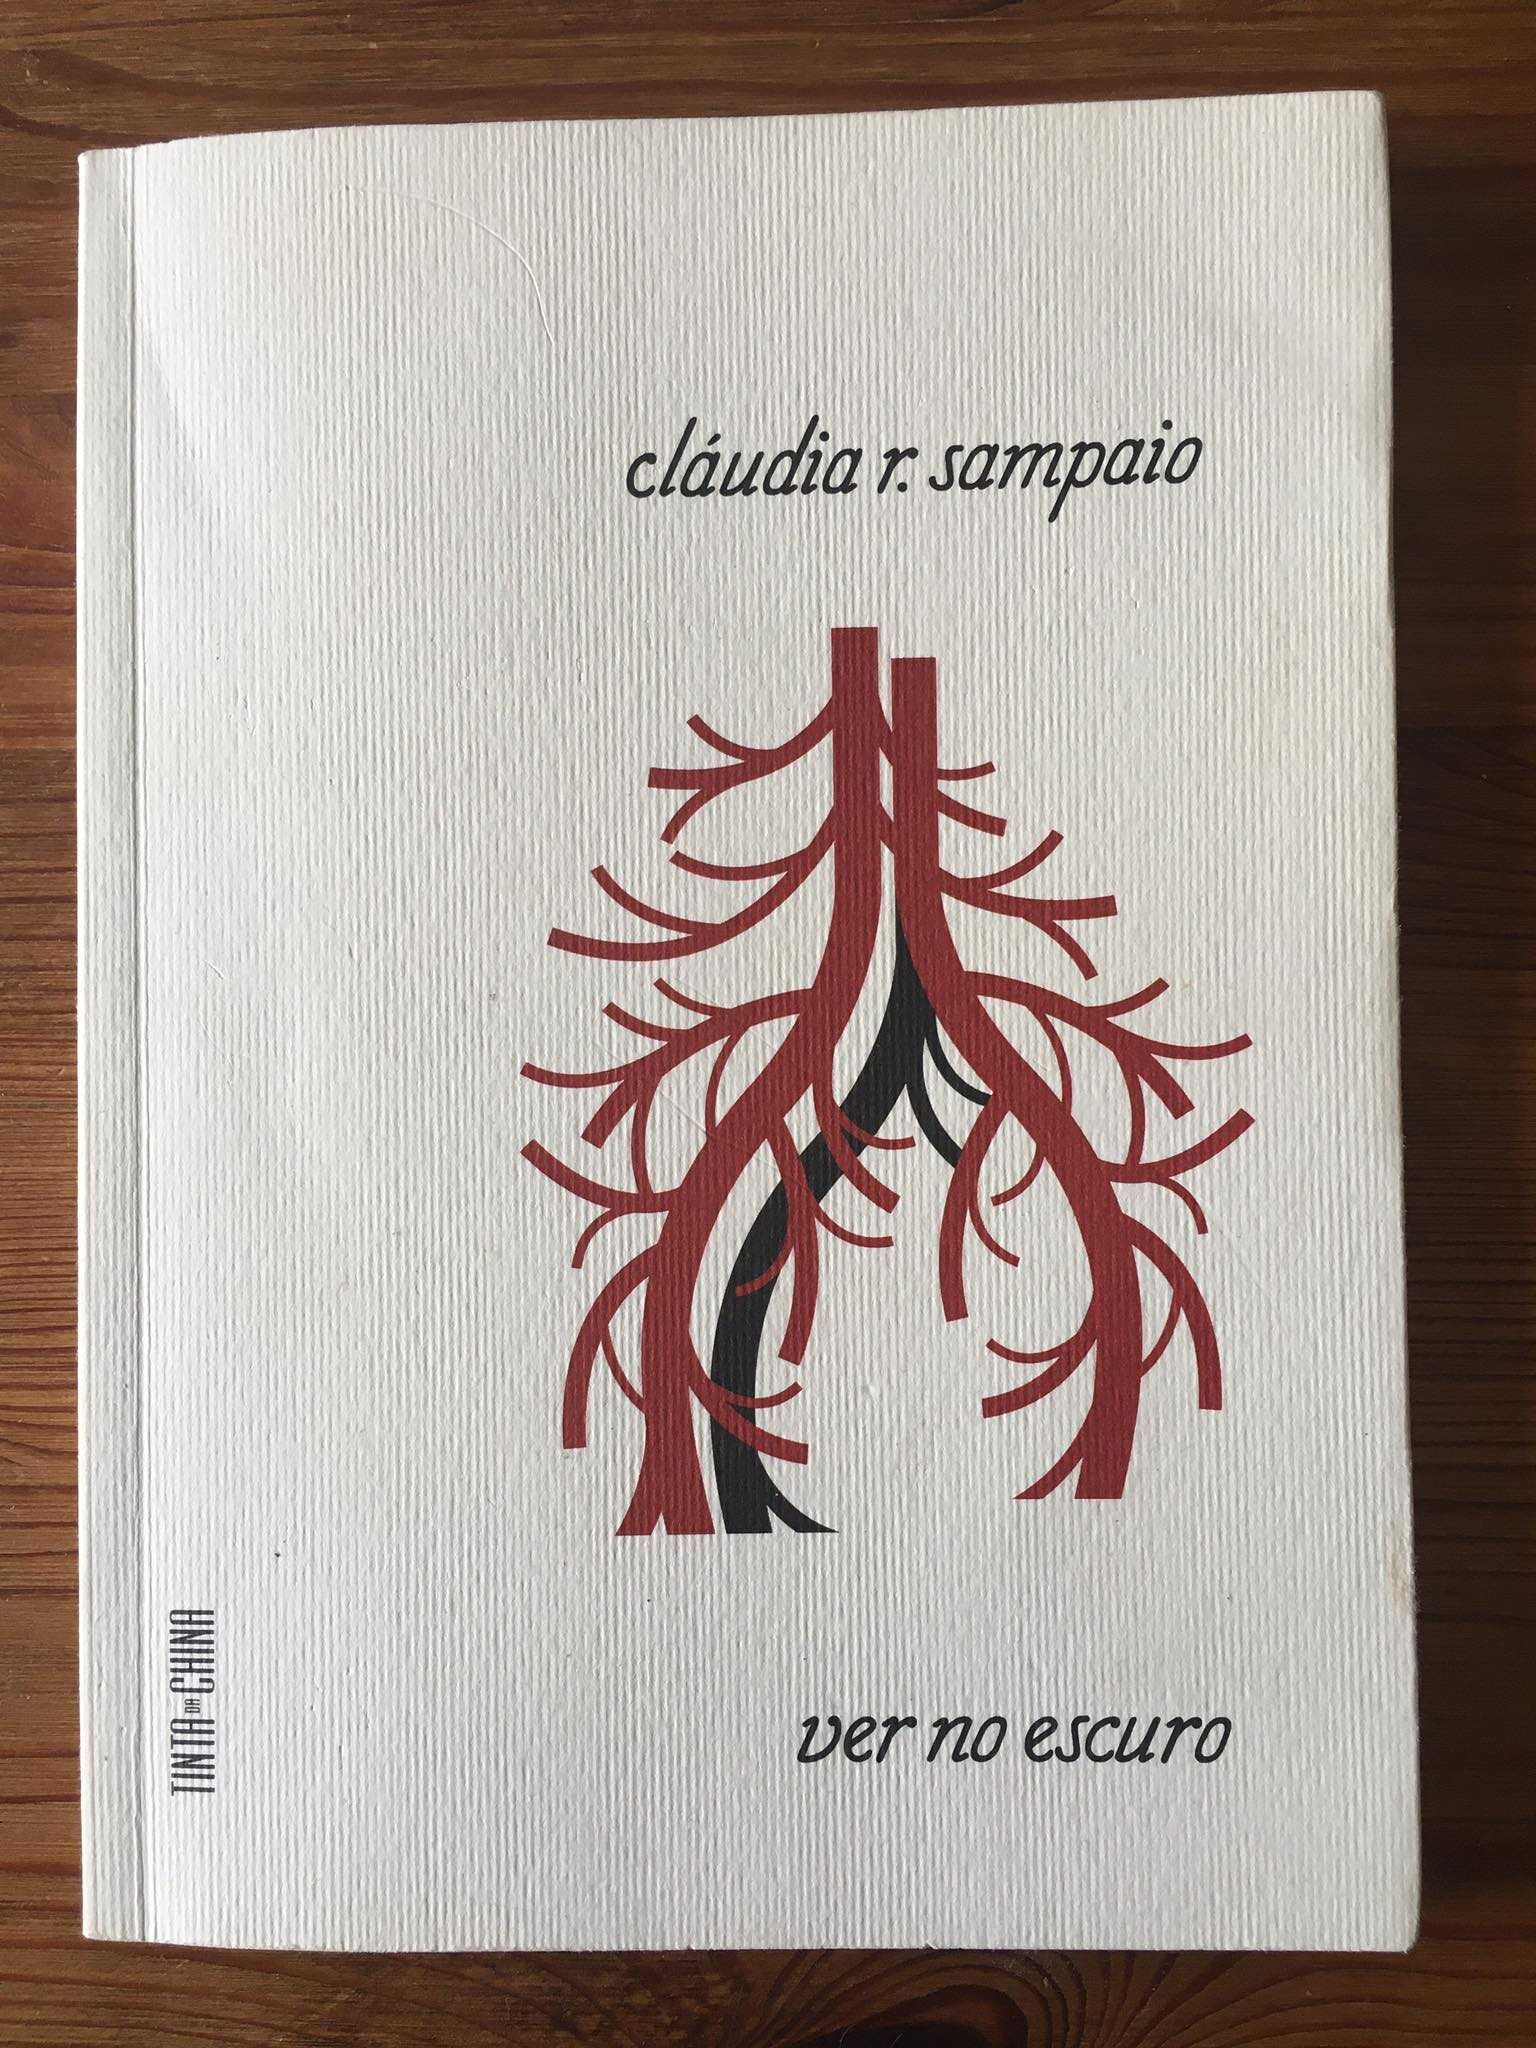 Ver no Escuro - Cláudia R. Sampaio